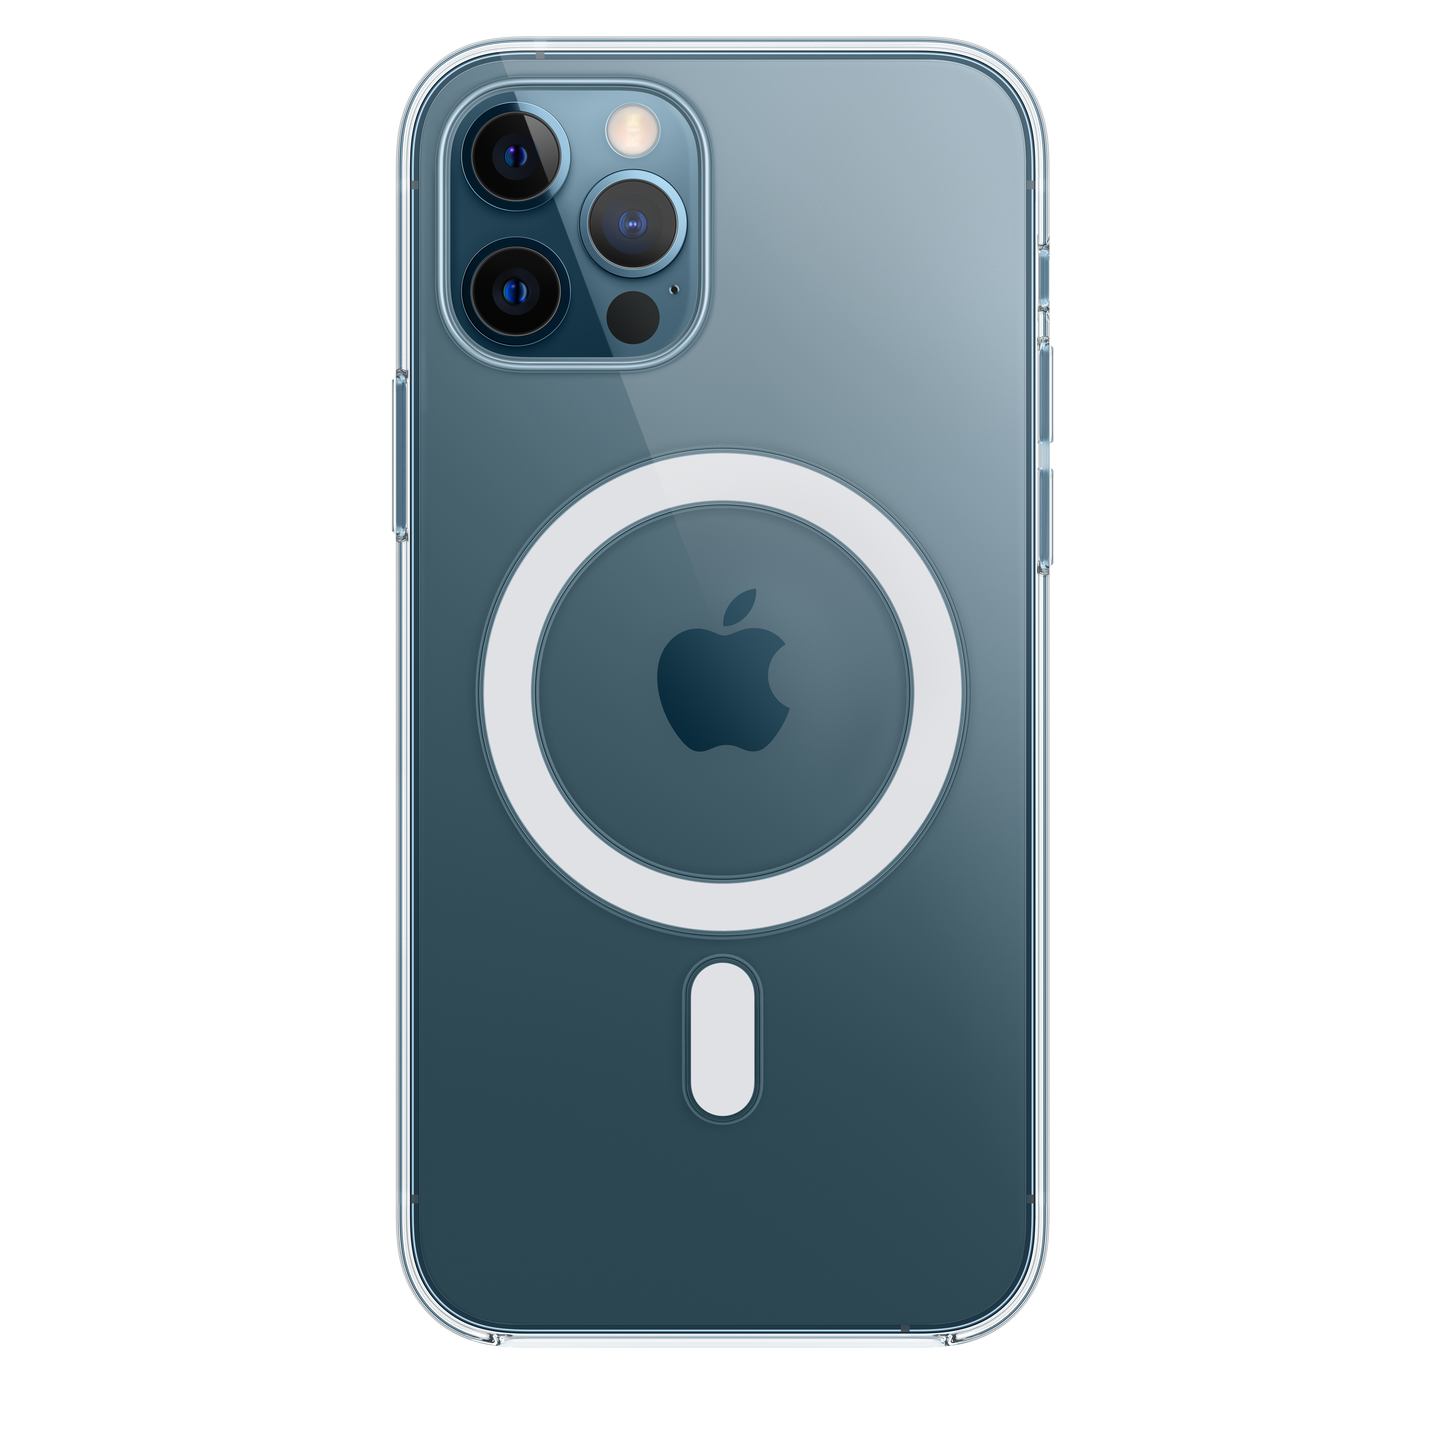 Funda transparente con MagSafe para el iPhone 12 y iPhone 12 Pro